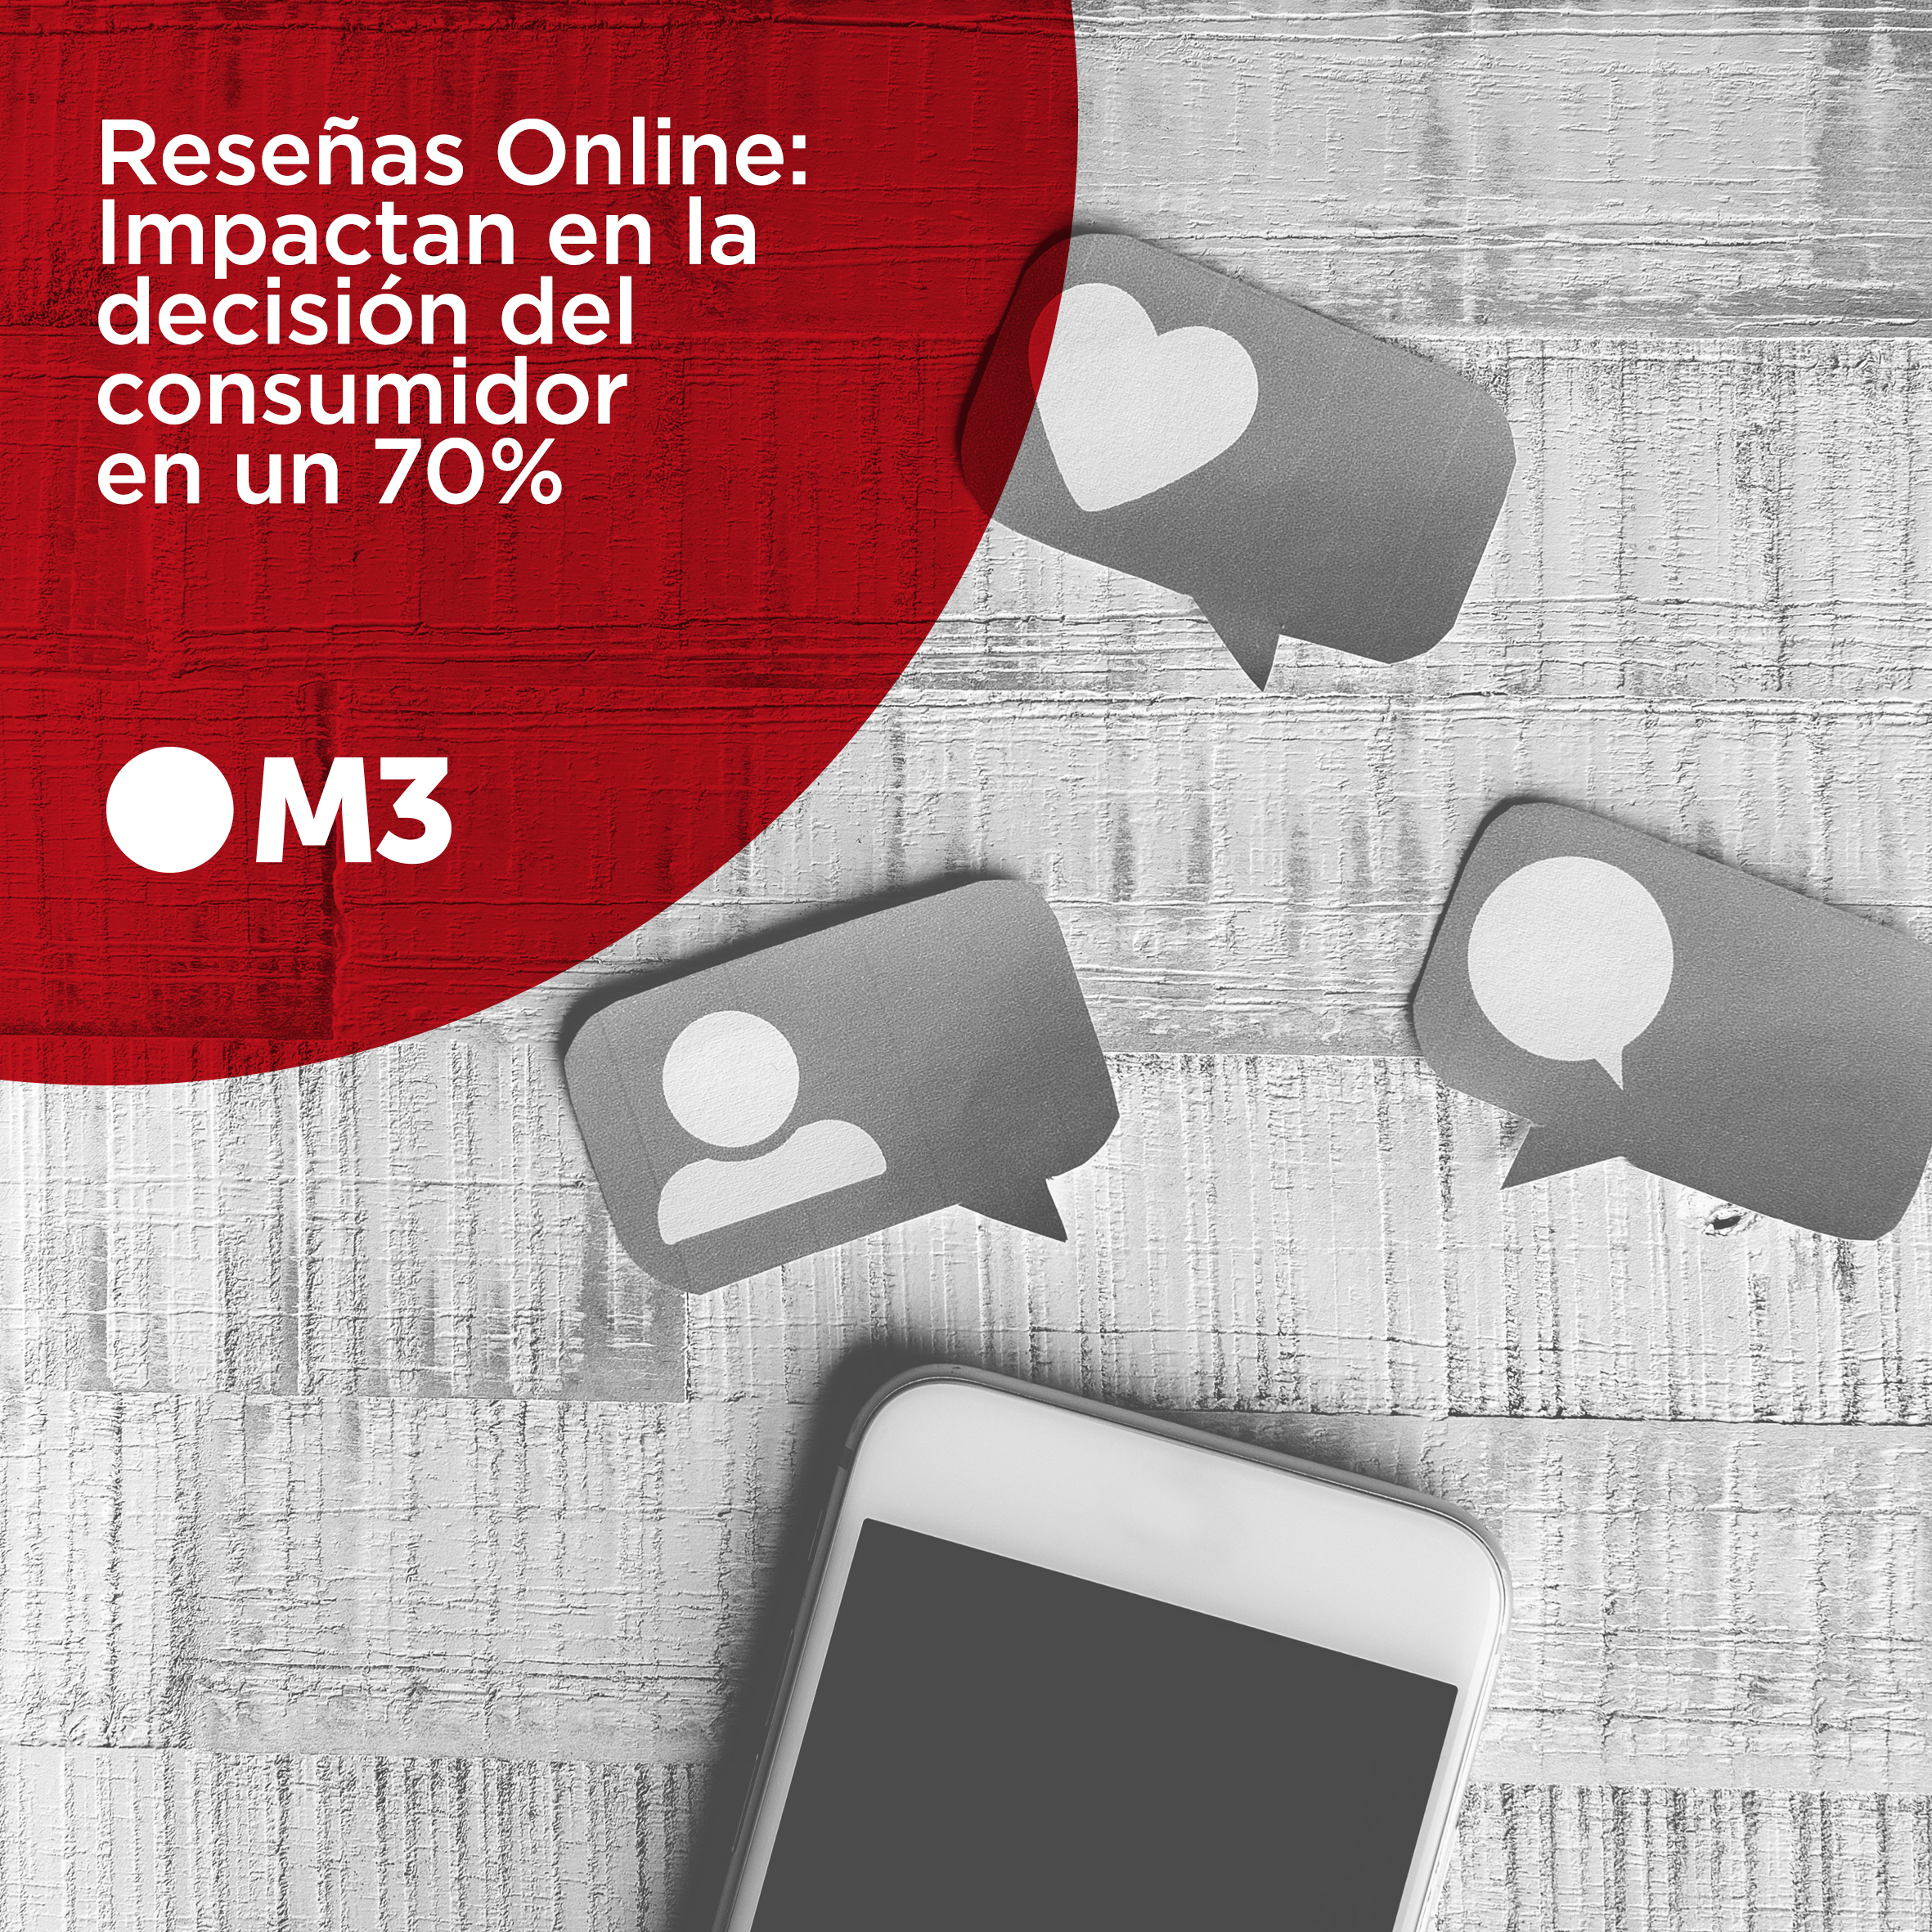 Reseñas Online: impactan en la decisión del consumidor en un 70%